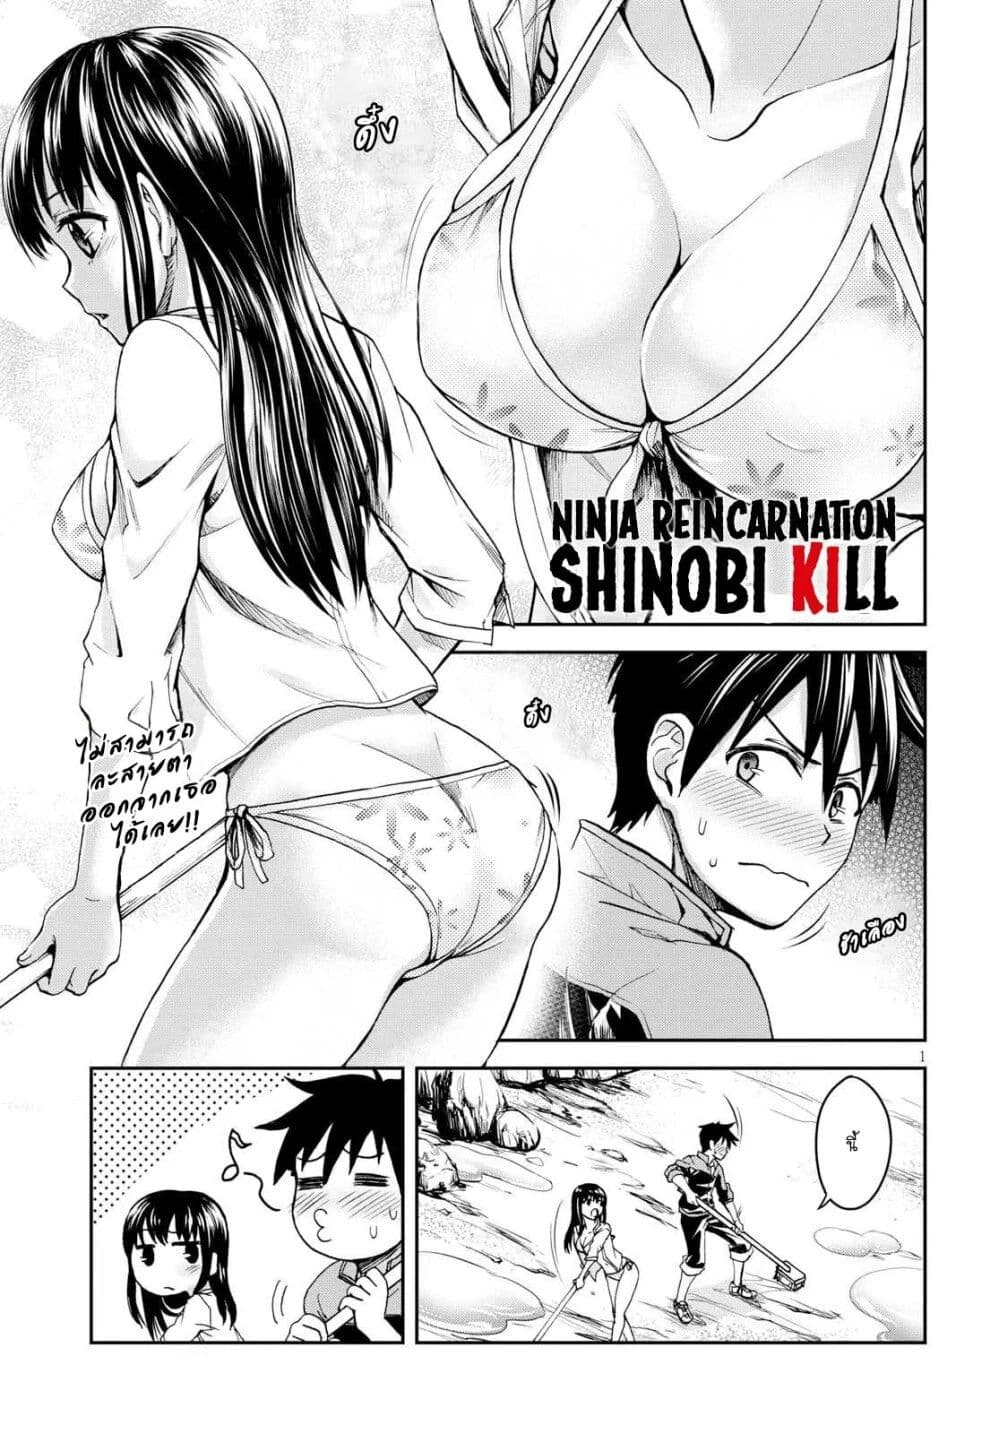 Shinobi Kill 4 2 (1)